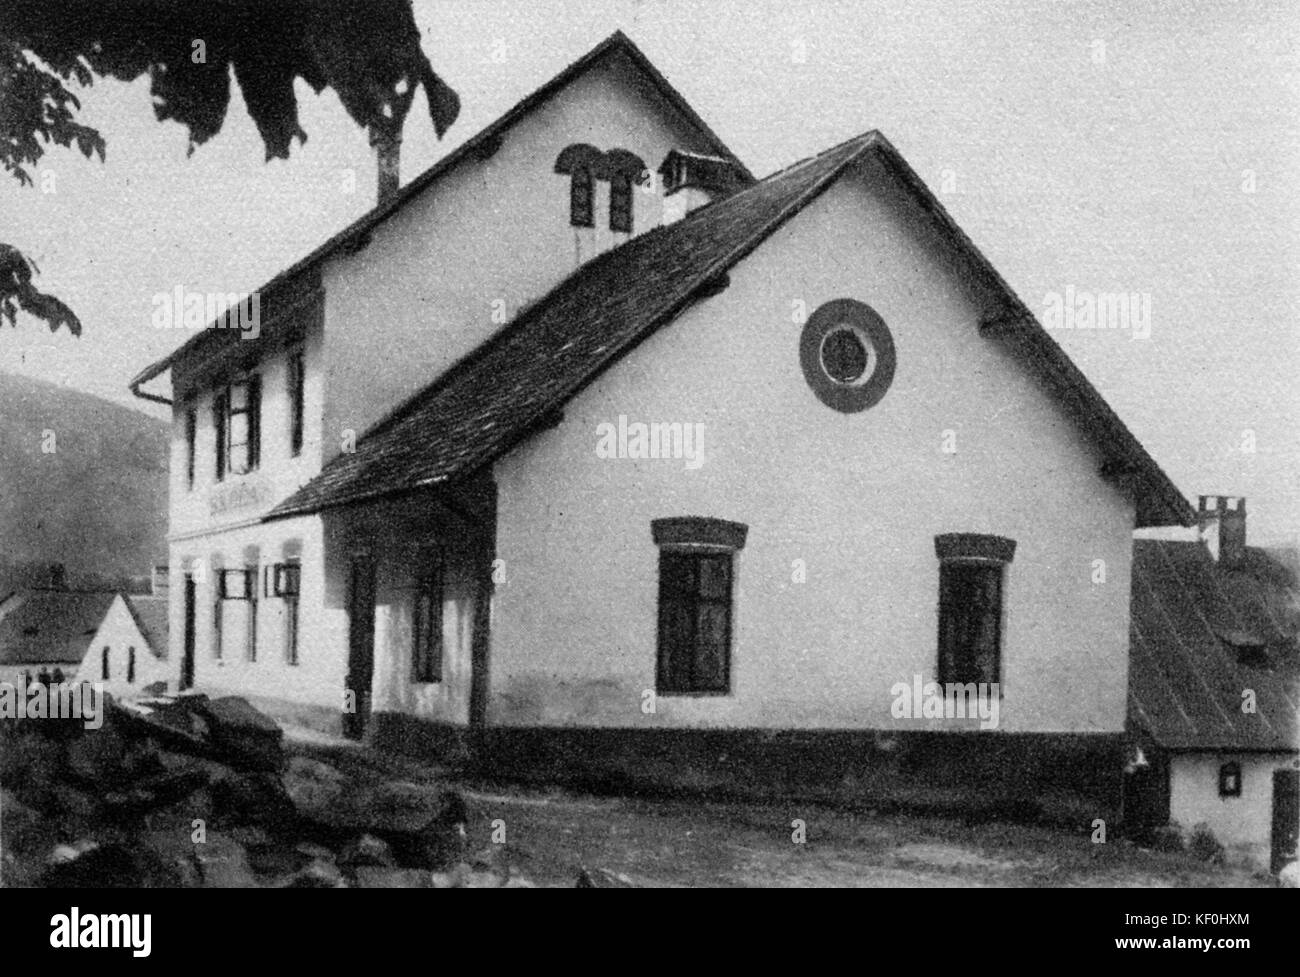 School of Hukvaldy, birthplace of Leos Janacek. Czech composer, 13 July 1854 - 12 August 1928. Stock Photo